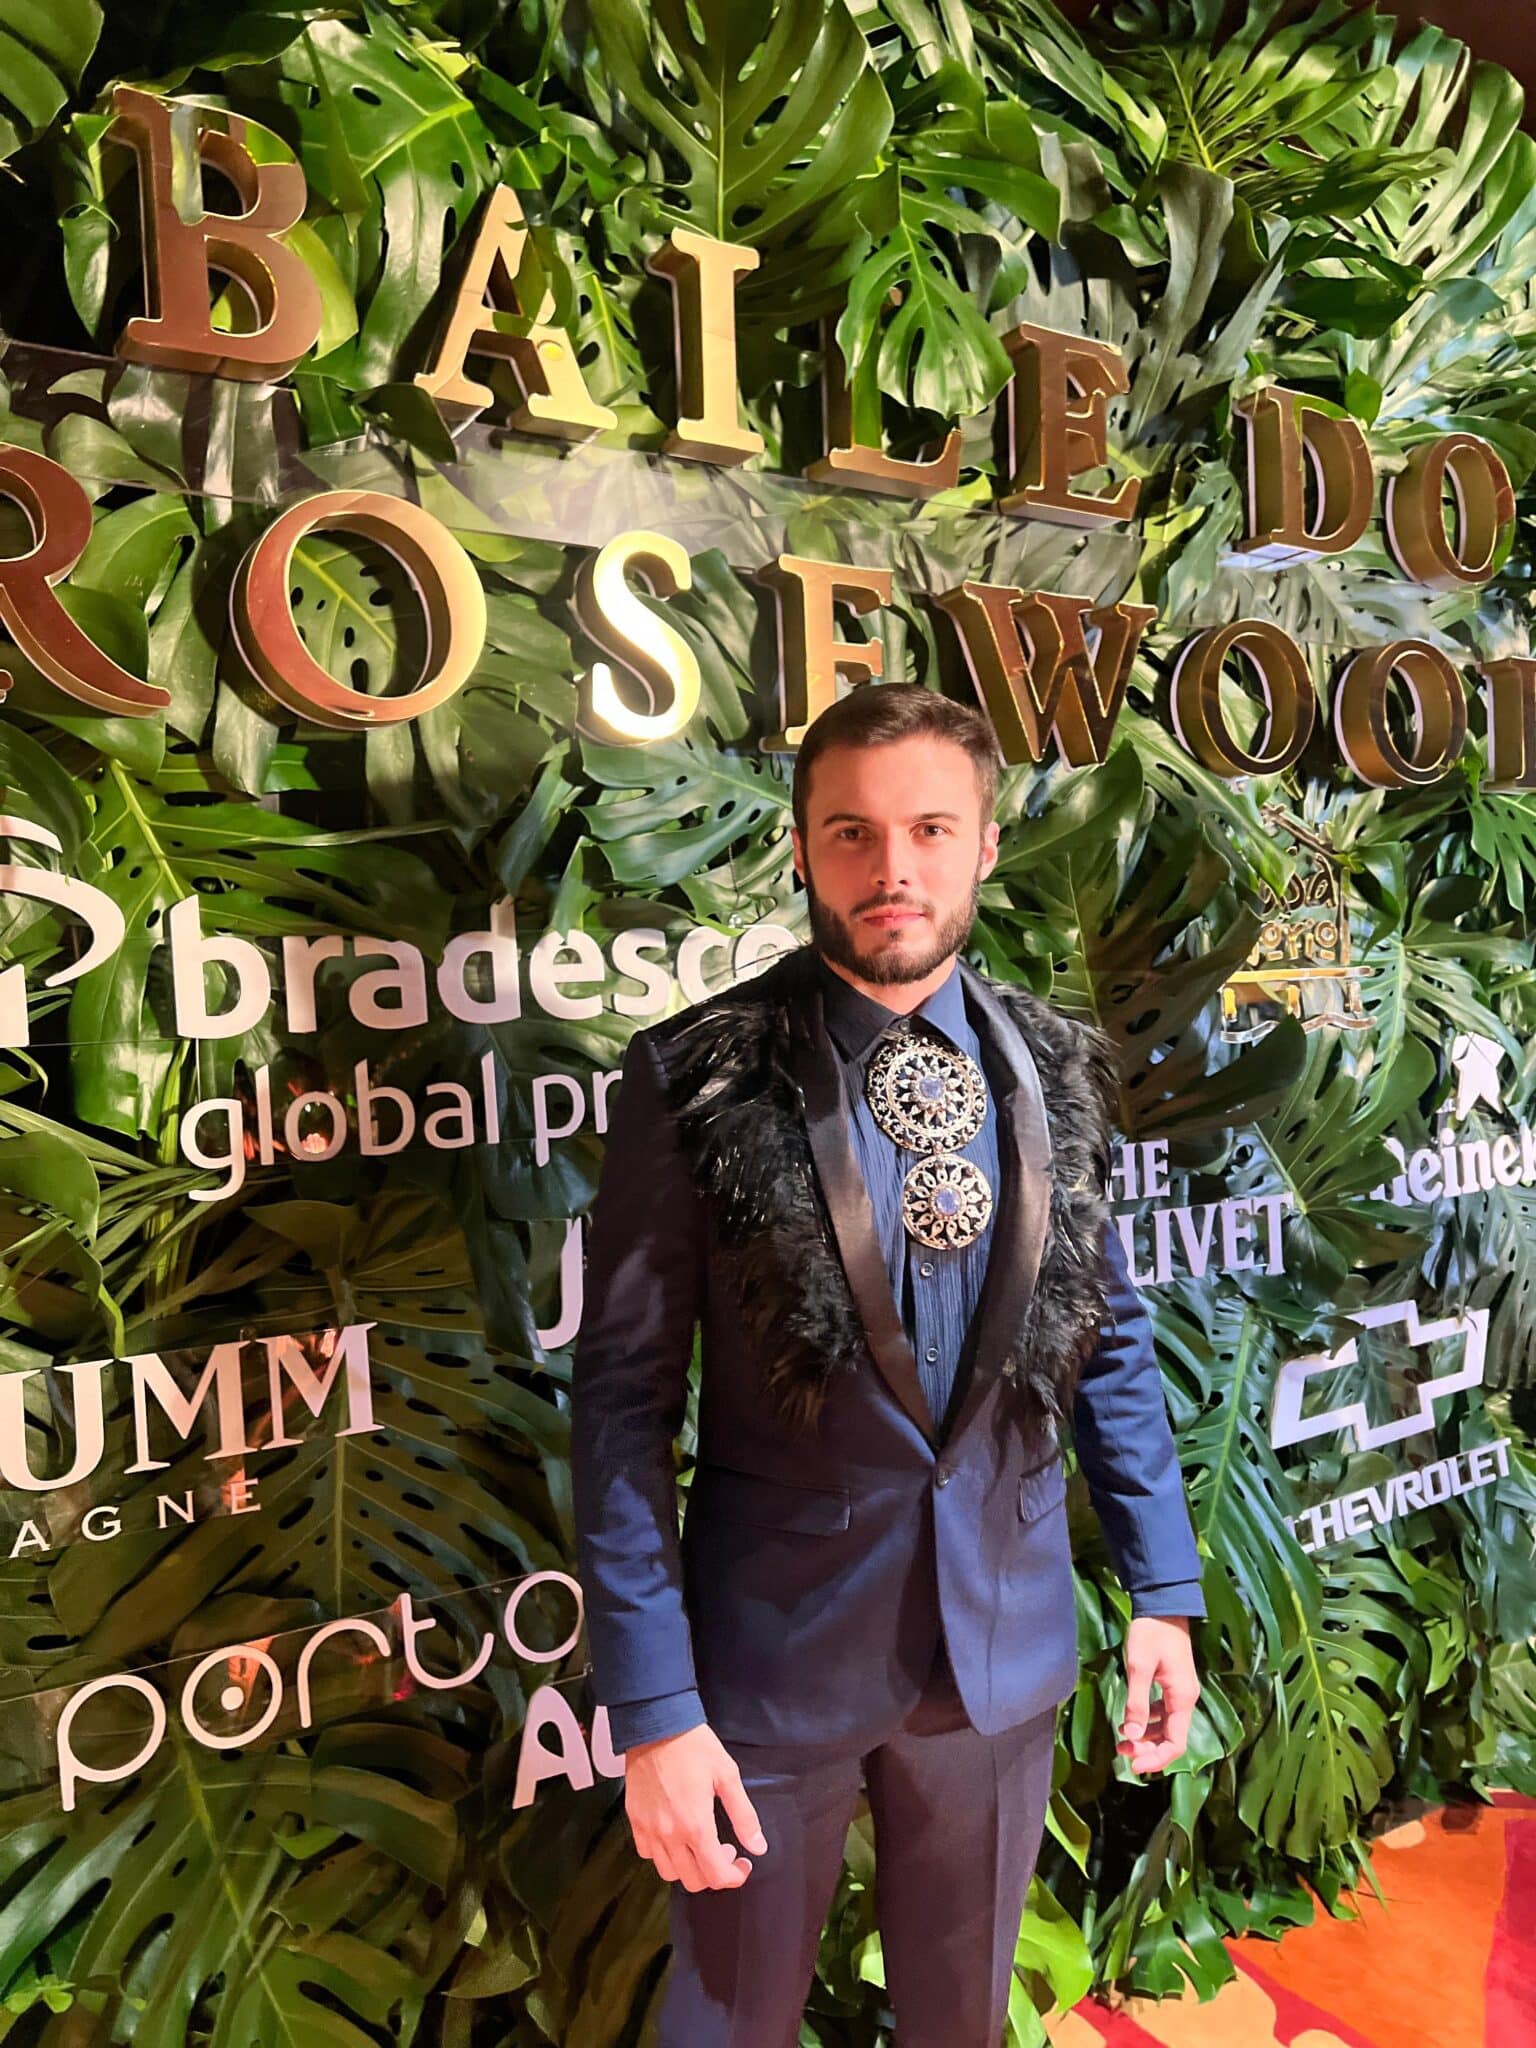 Empresário do ES, Miss Brasil e famosos: veja fotos do Baile do Rosewood em SP (Foto: Acervo pessoal)